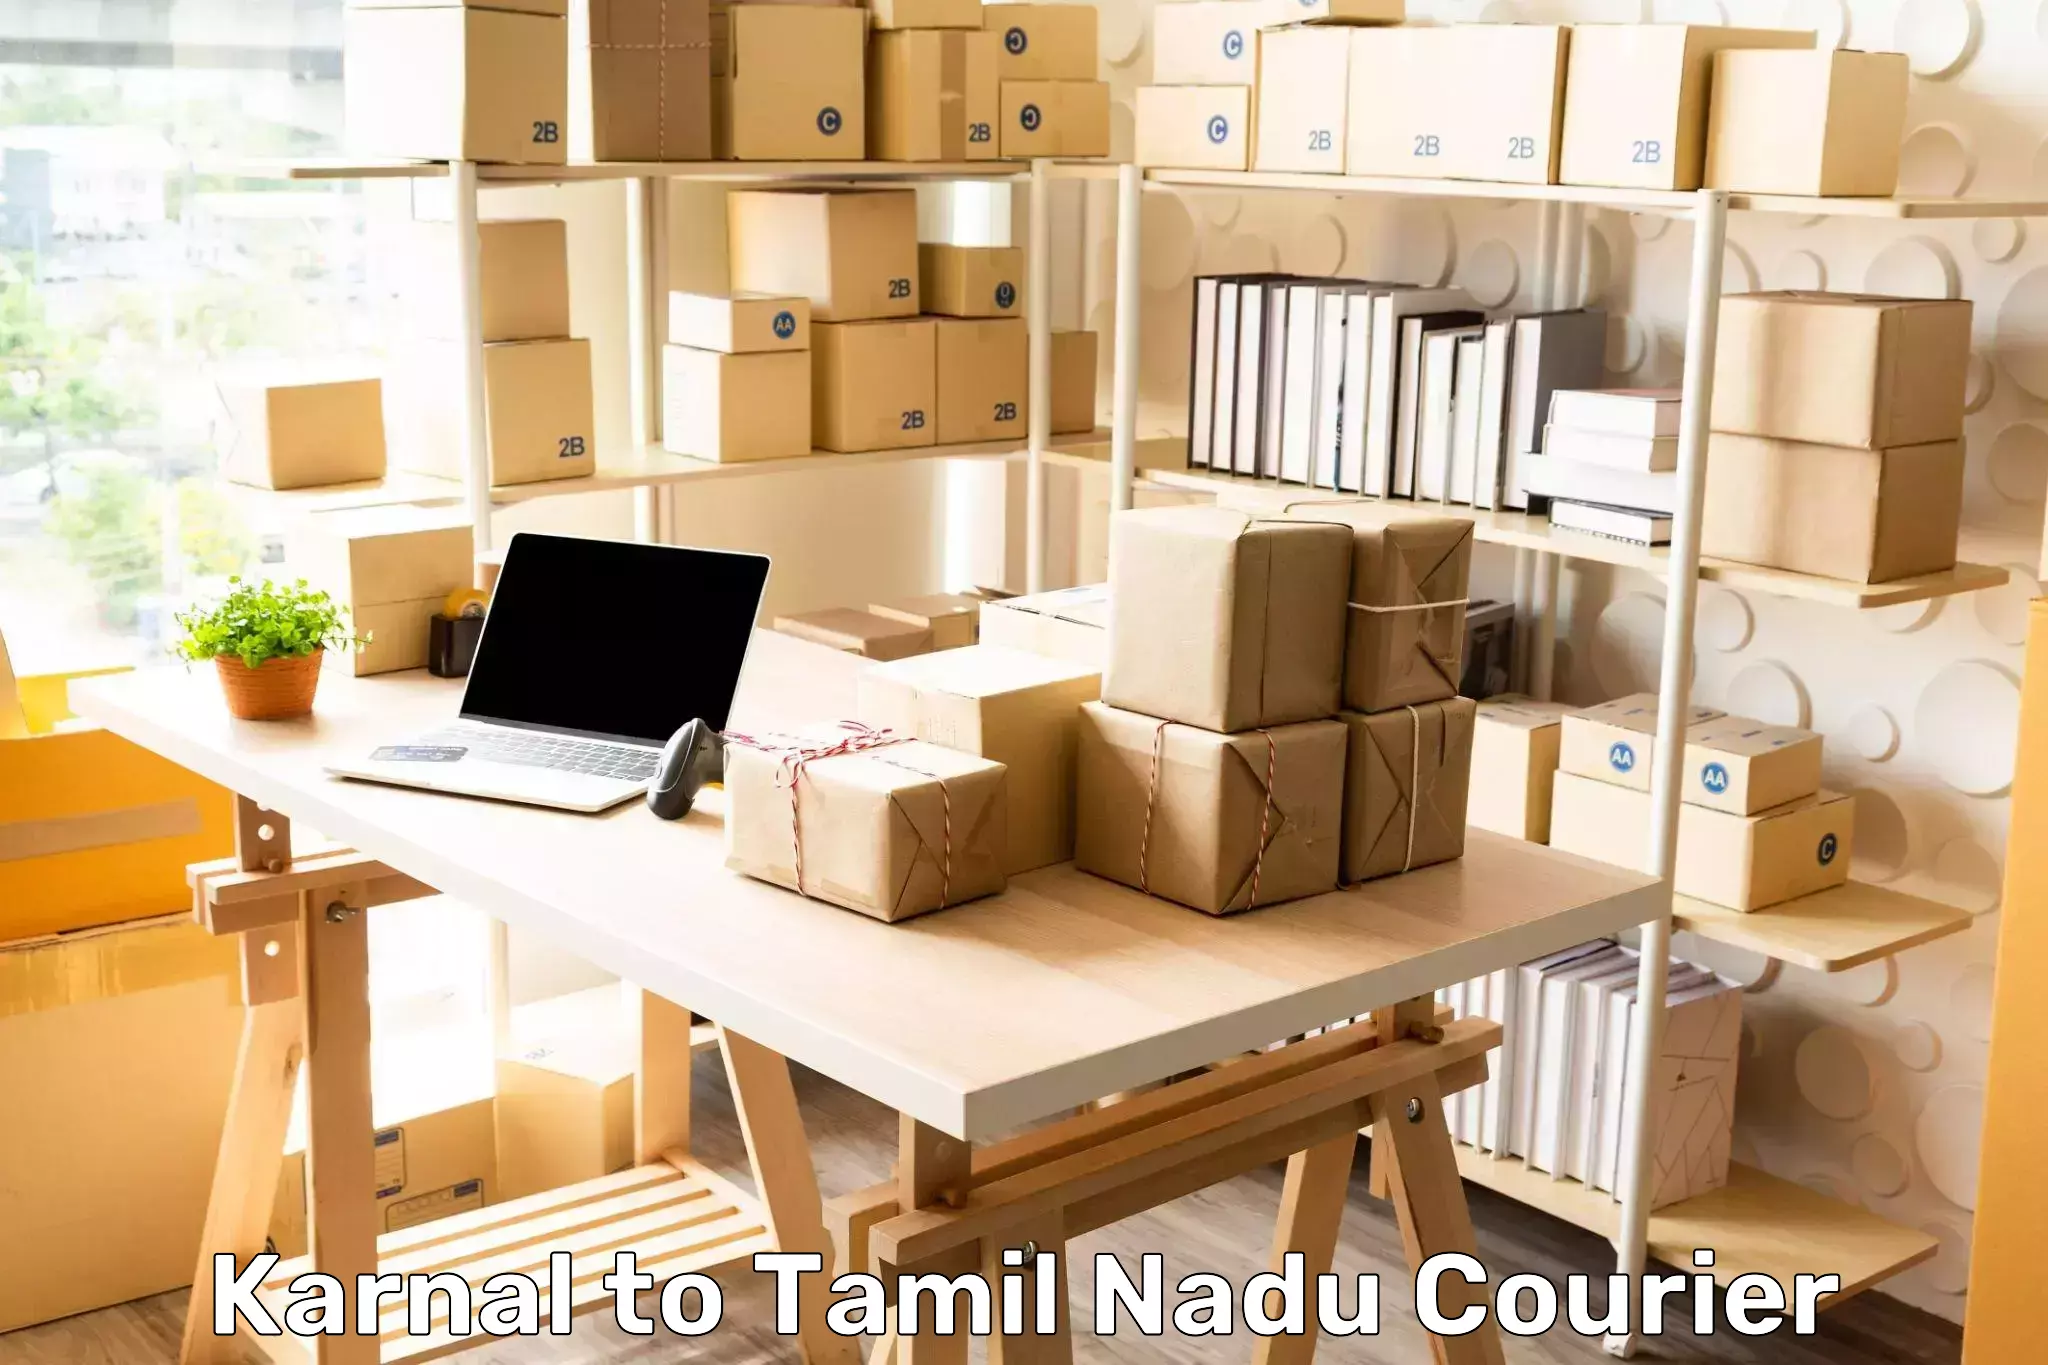 Express shipping Karnal to Tamil Nadu